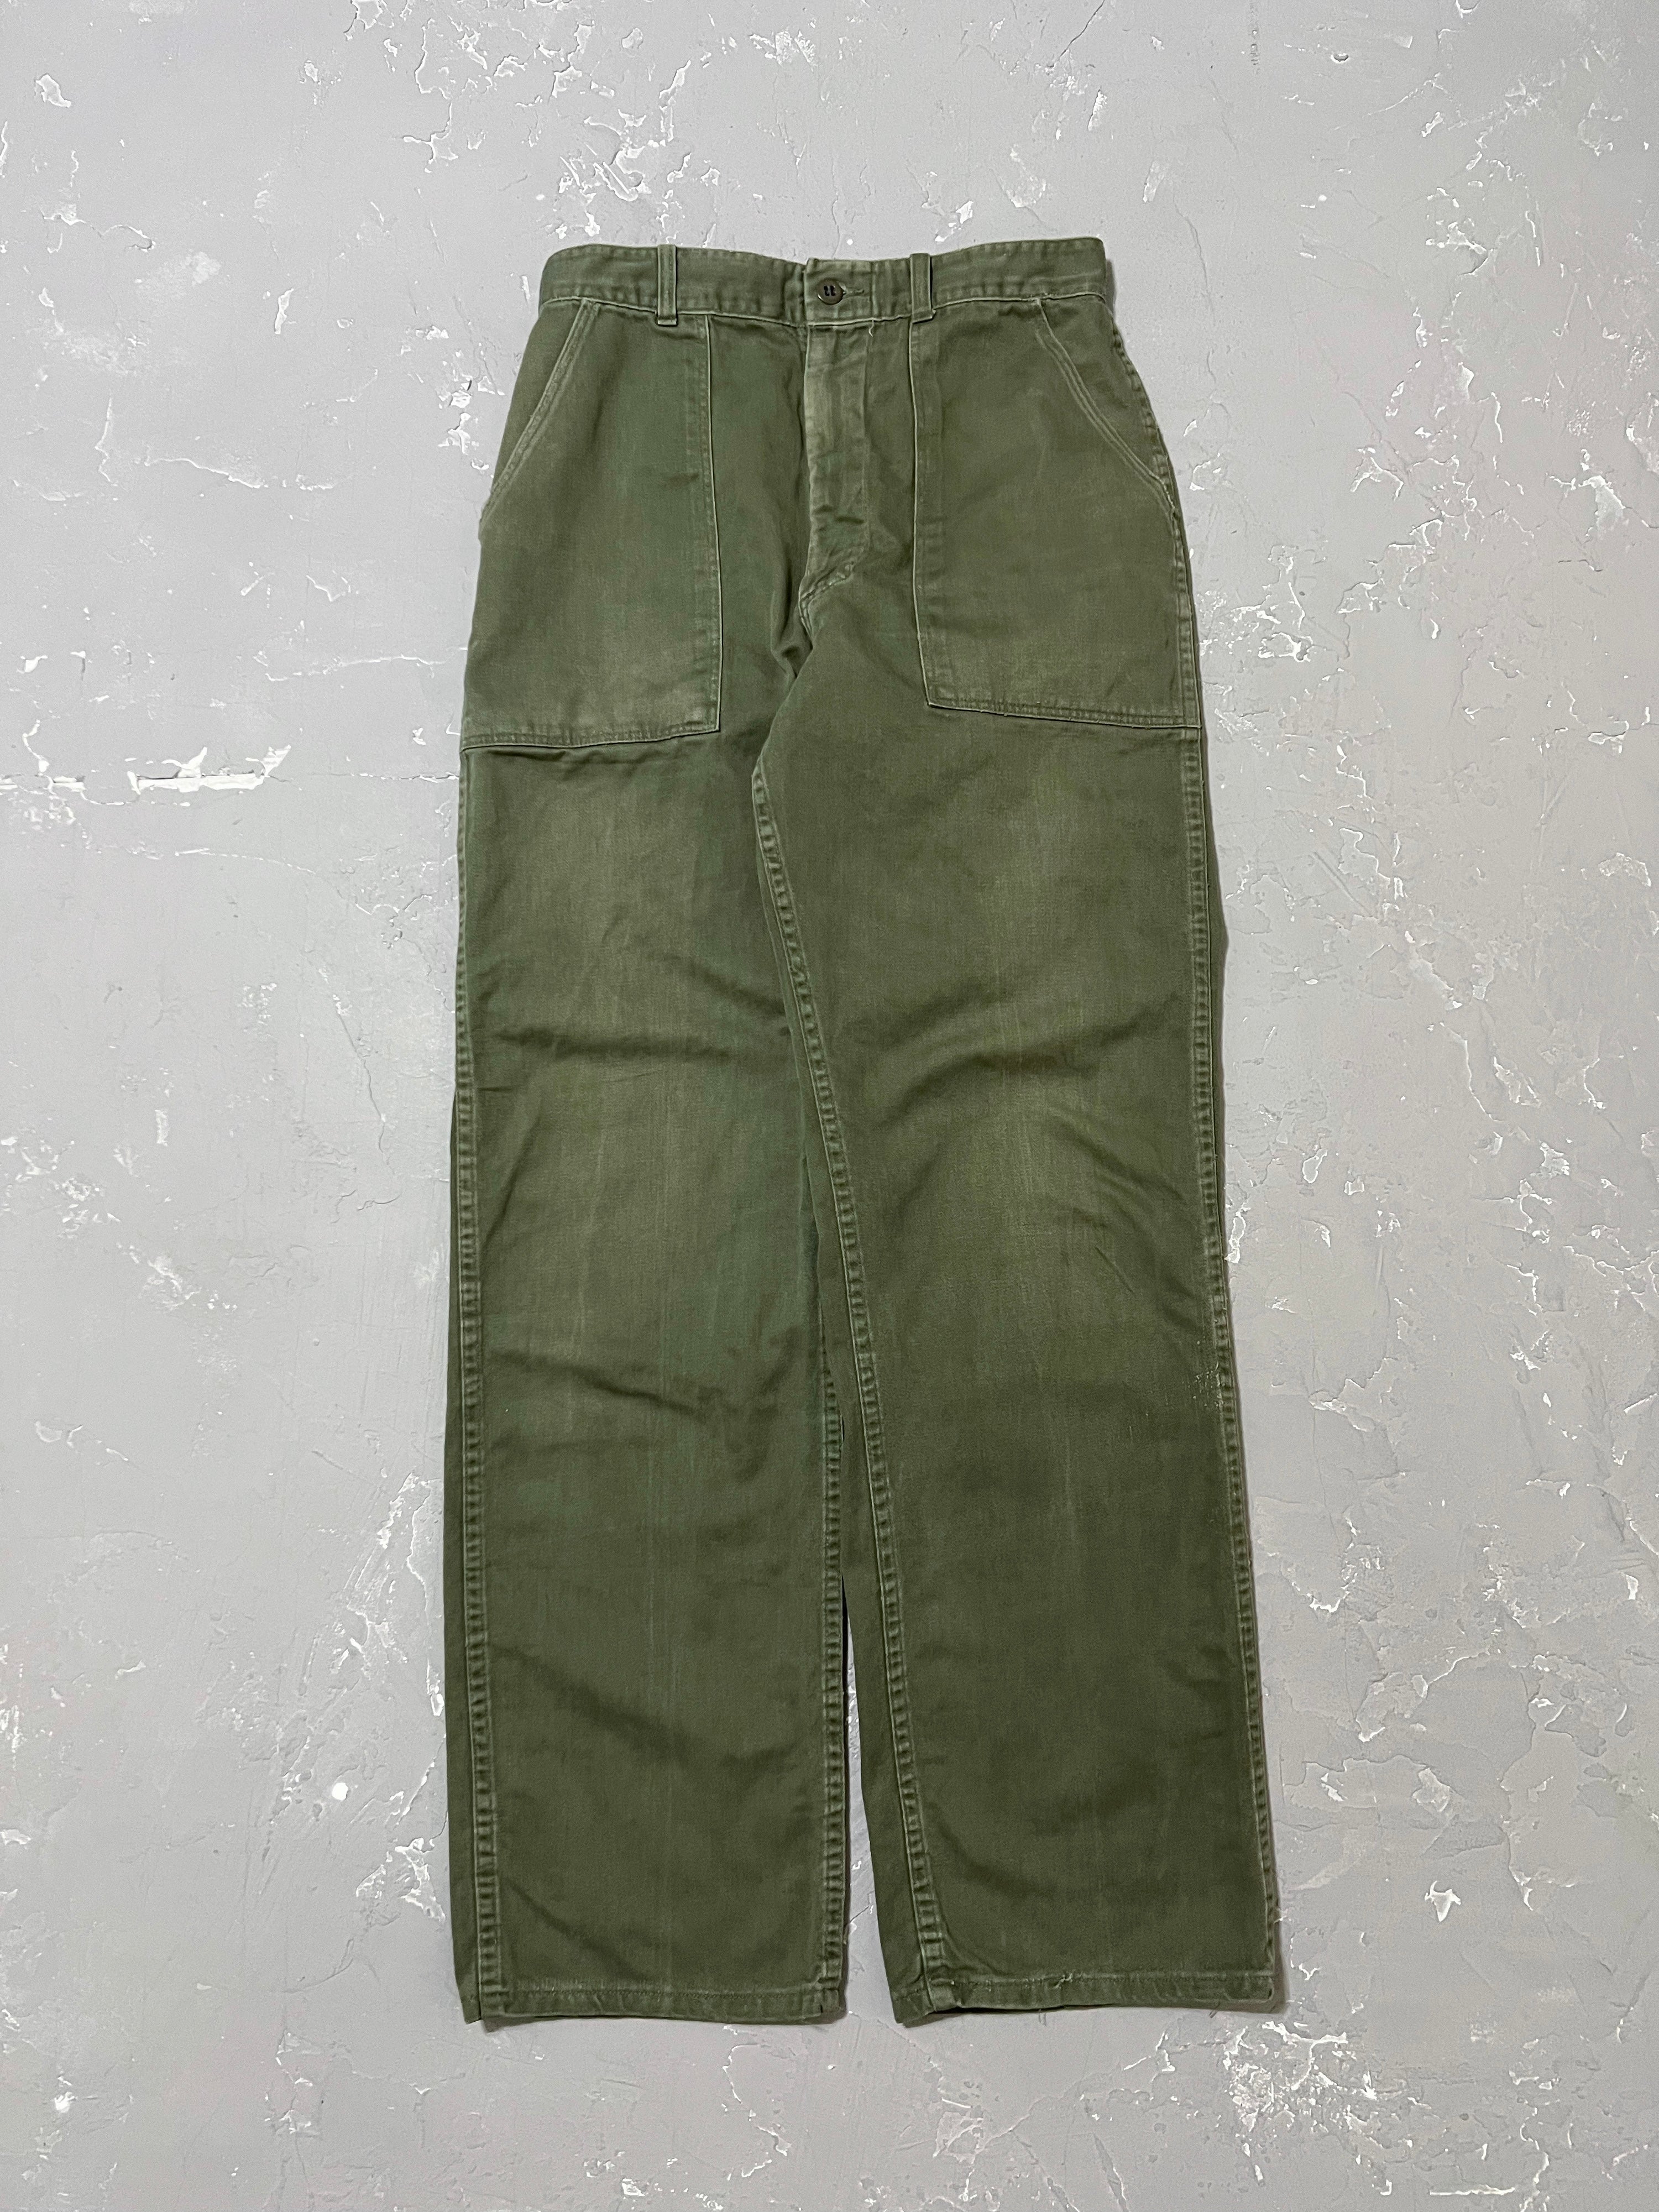 1960s OG-107 Fatigue Pants [29 x 32]